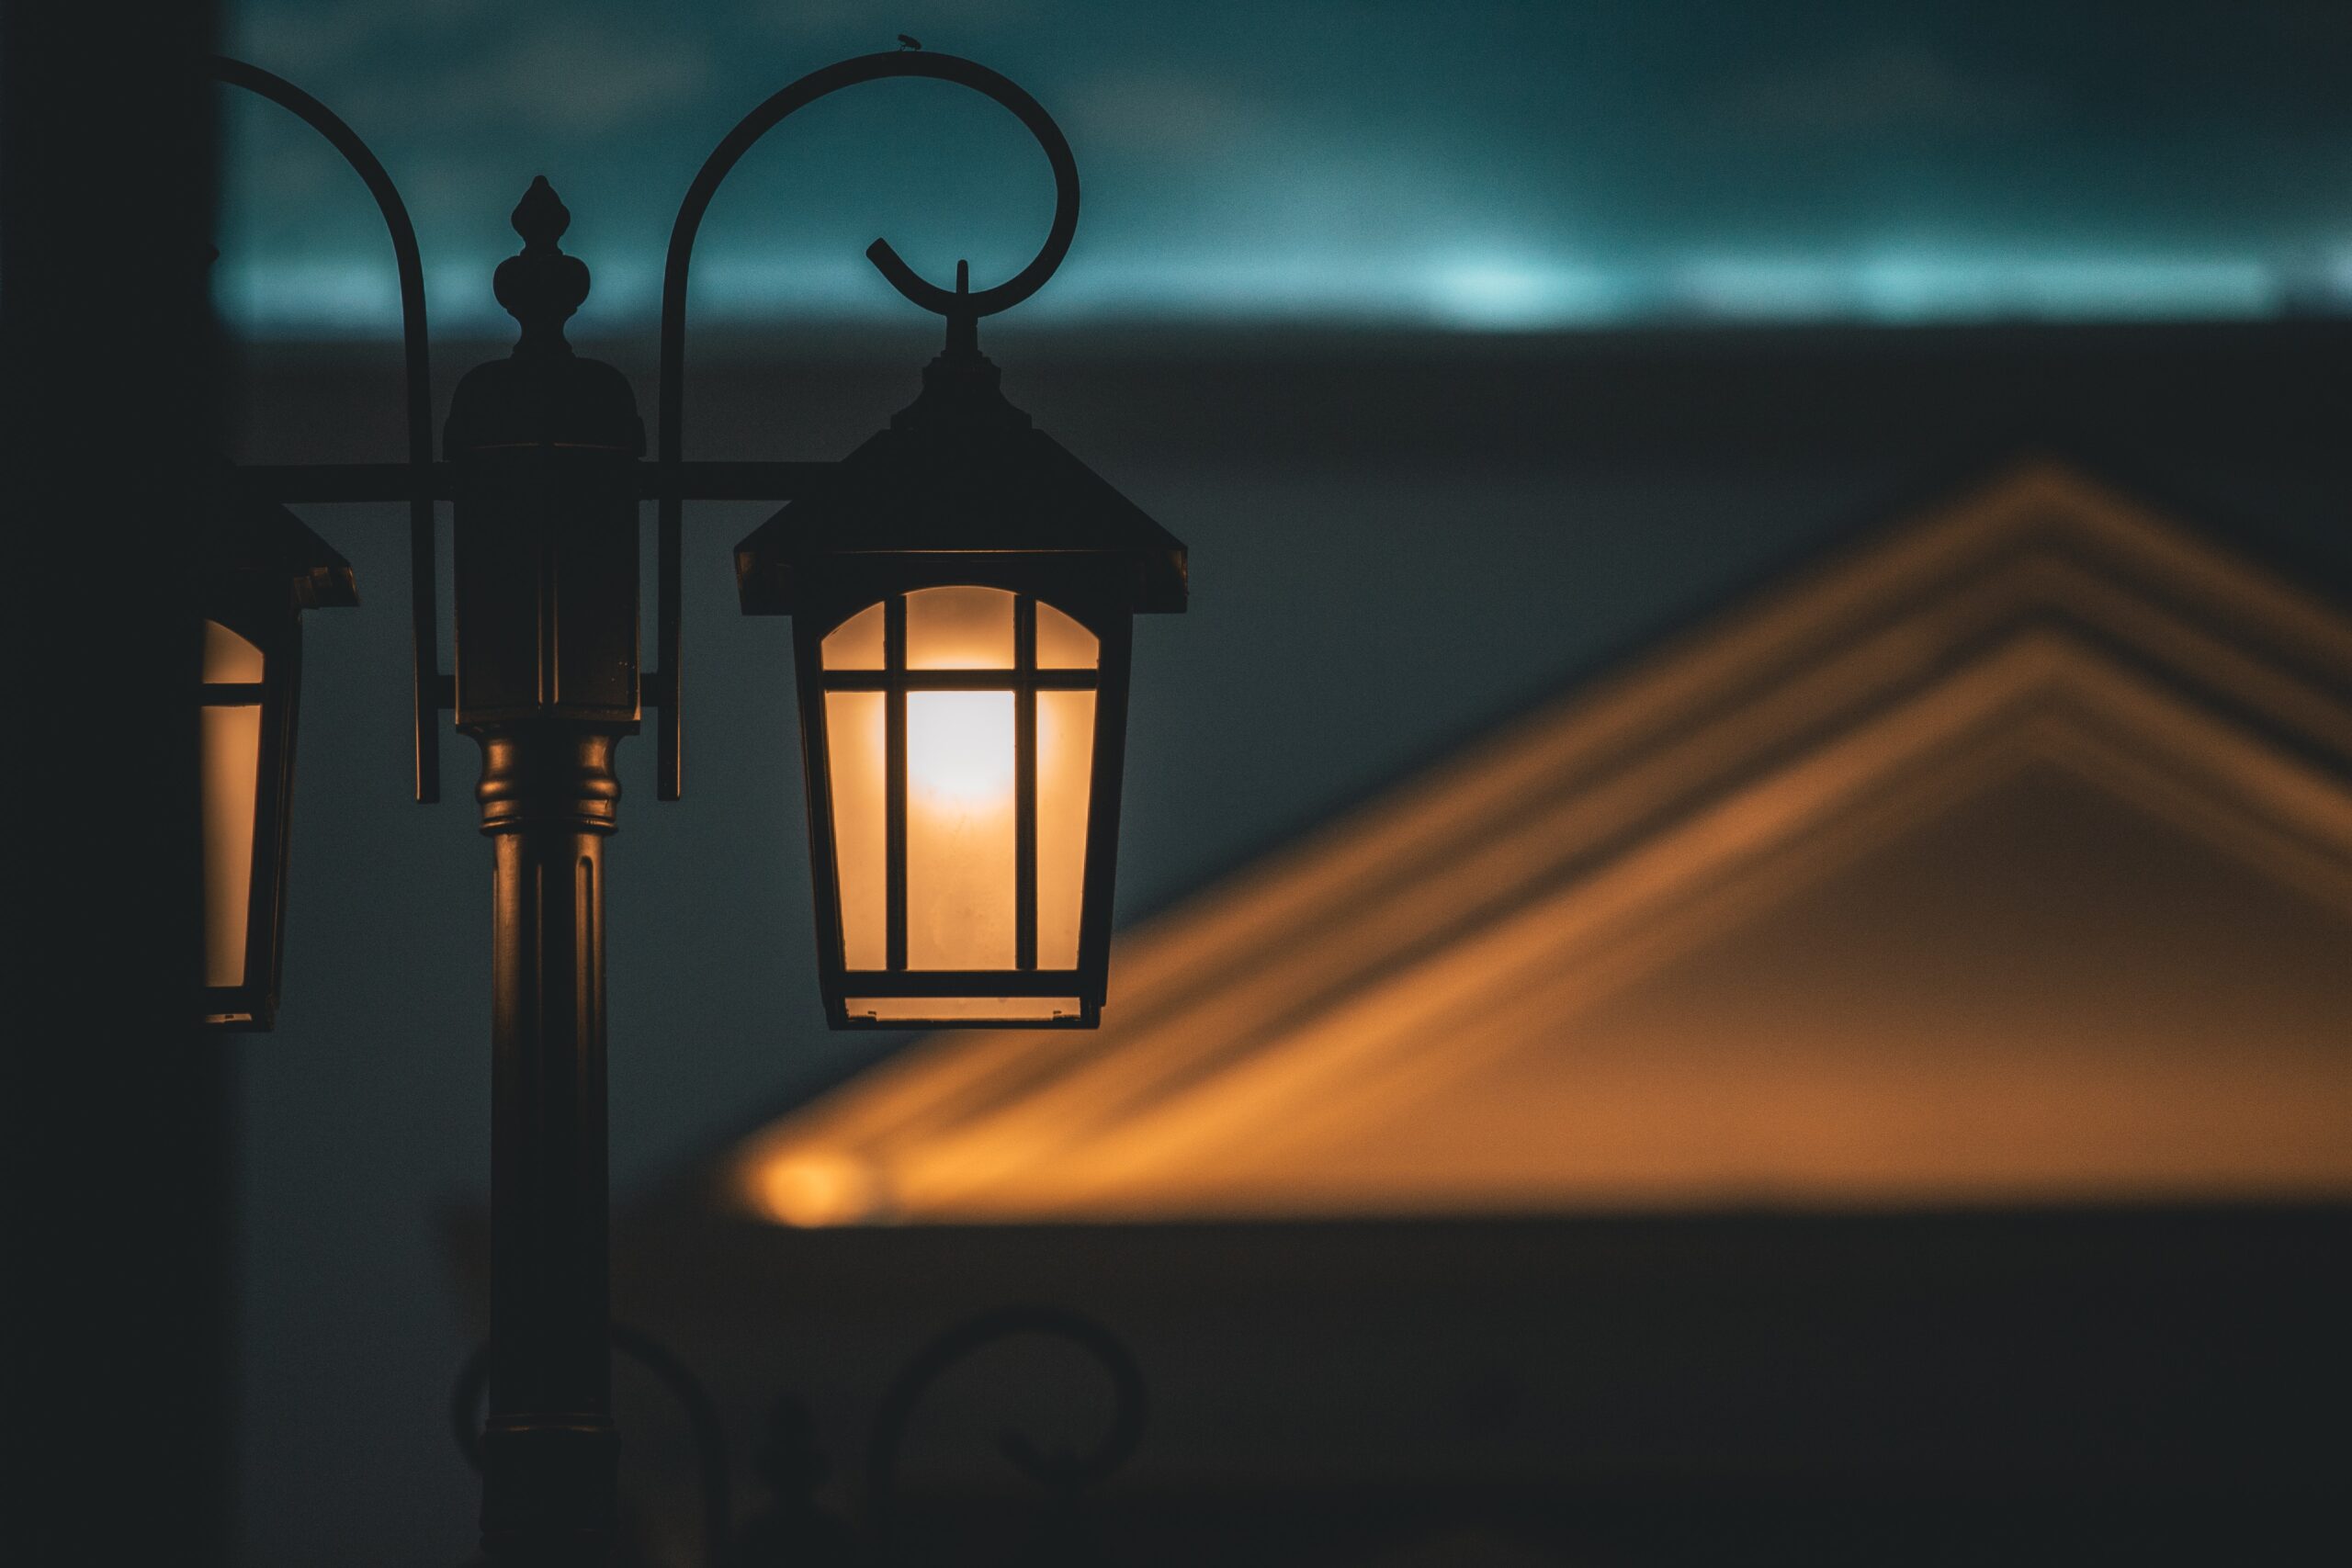 ánh đèn, đường phố